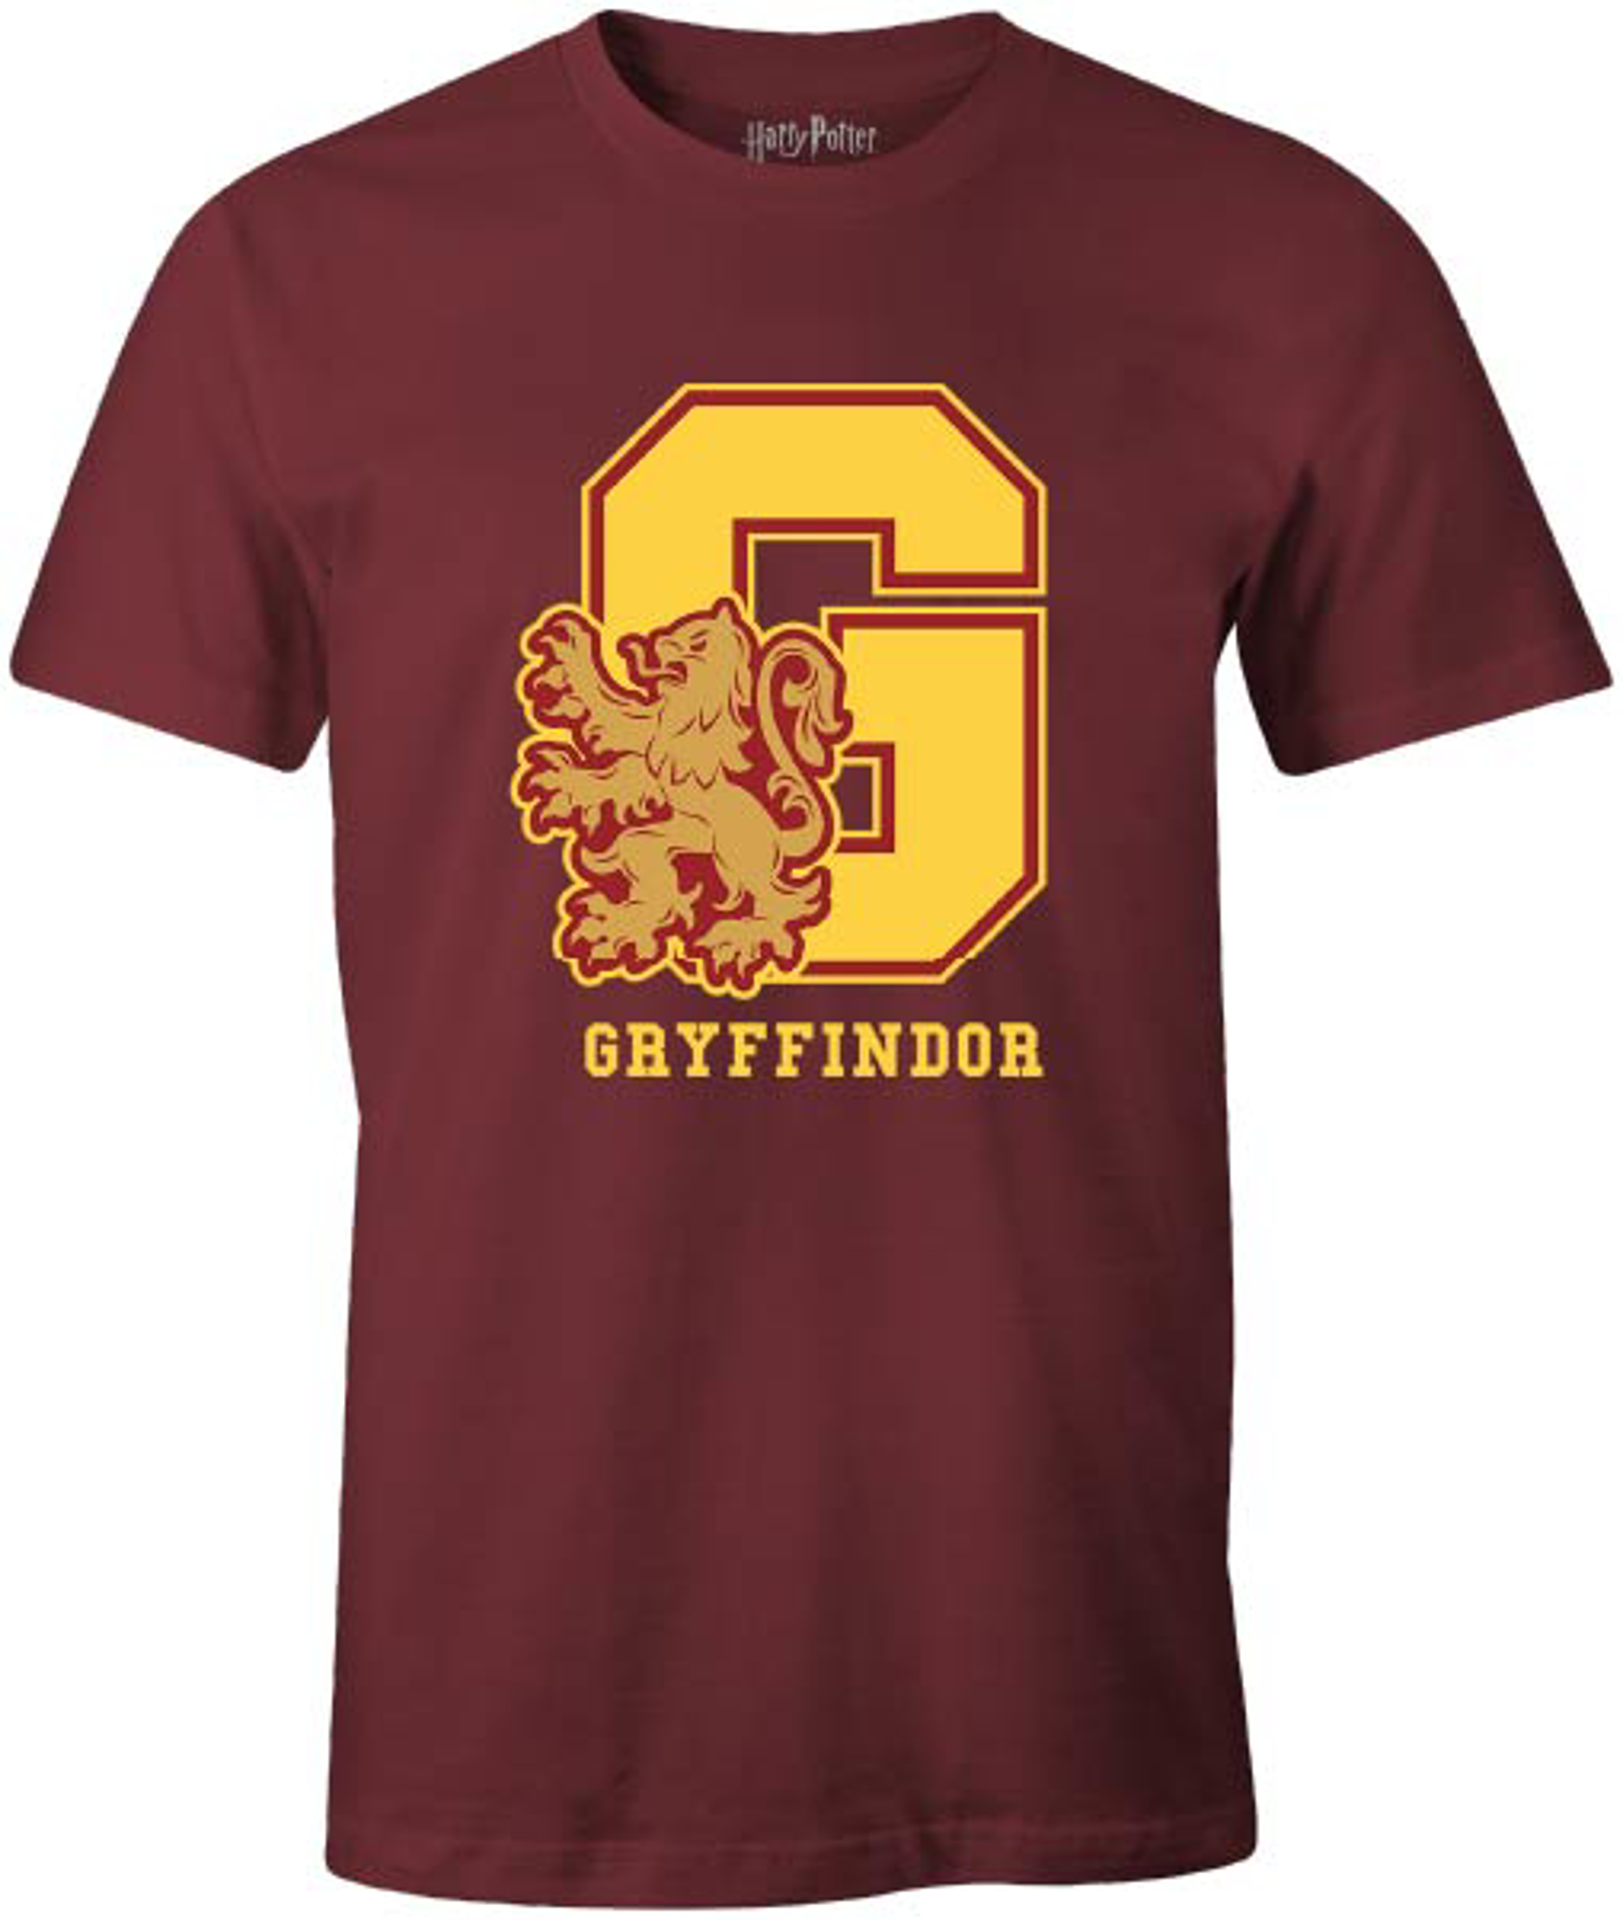 Harry Potter - T-shirt Bordeaux Hommes - G Gryffondor - XL